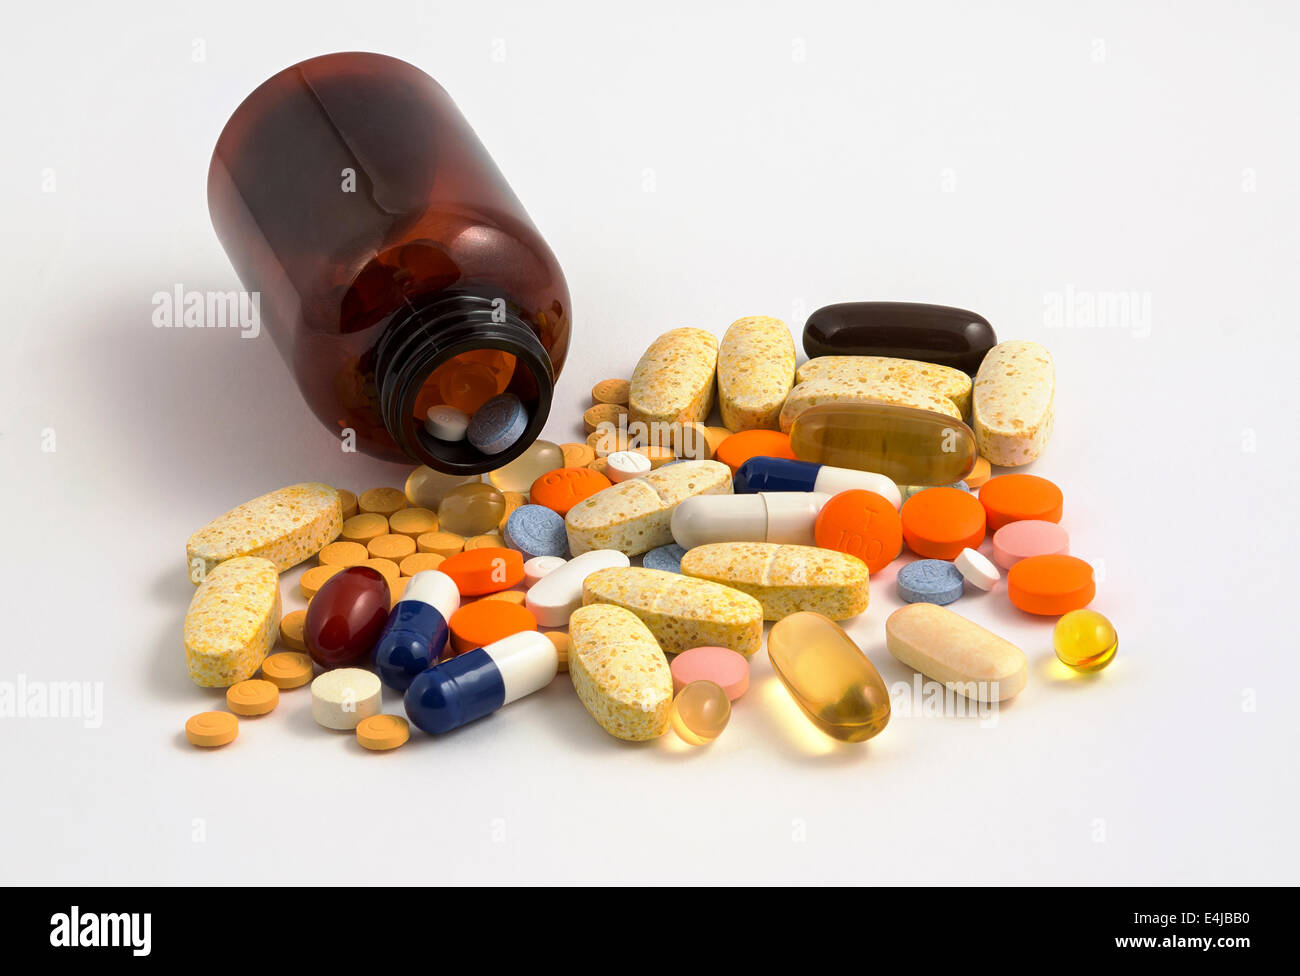 Eine typische Sammlung von Medikamenten und Behandlungen, die zu einem Patienten gegeben werden können, eine Situation, bekannt als Polypharma oder die gleichzeitige. Stockfoto